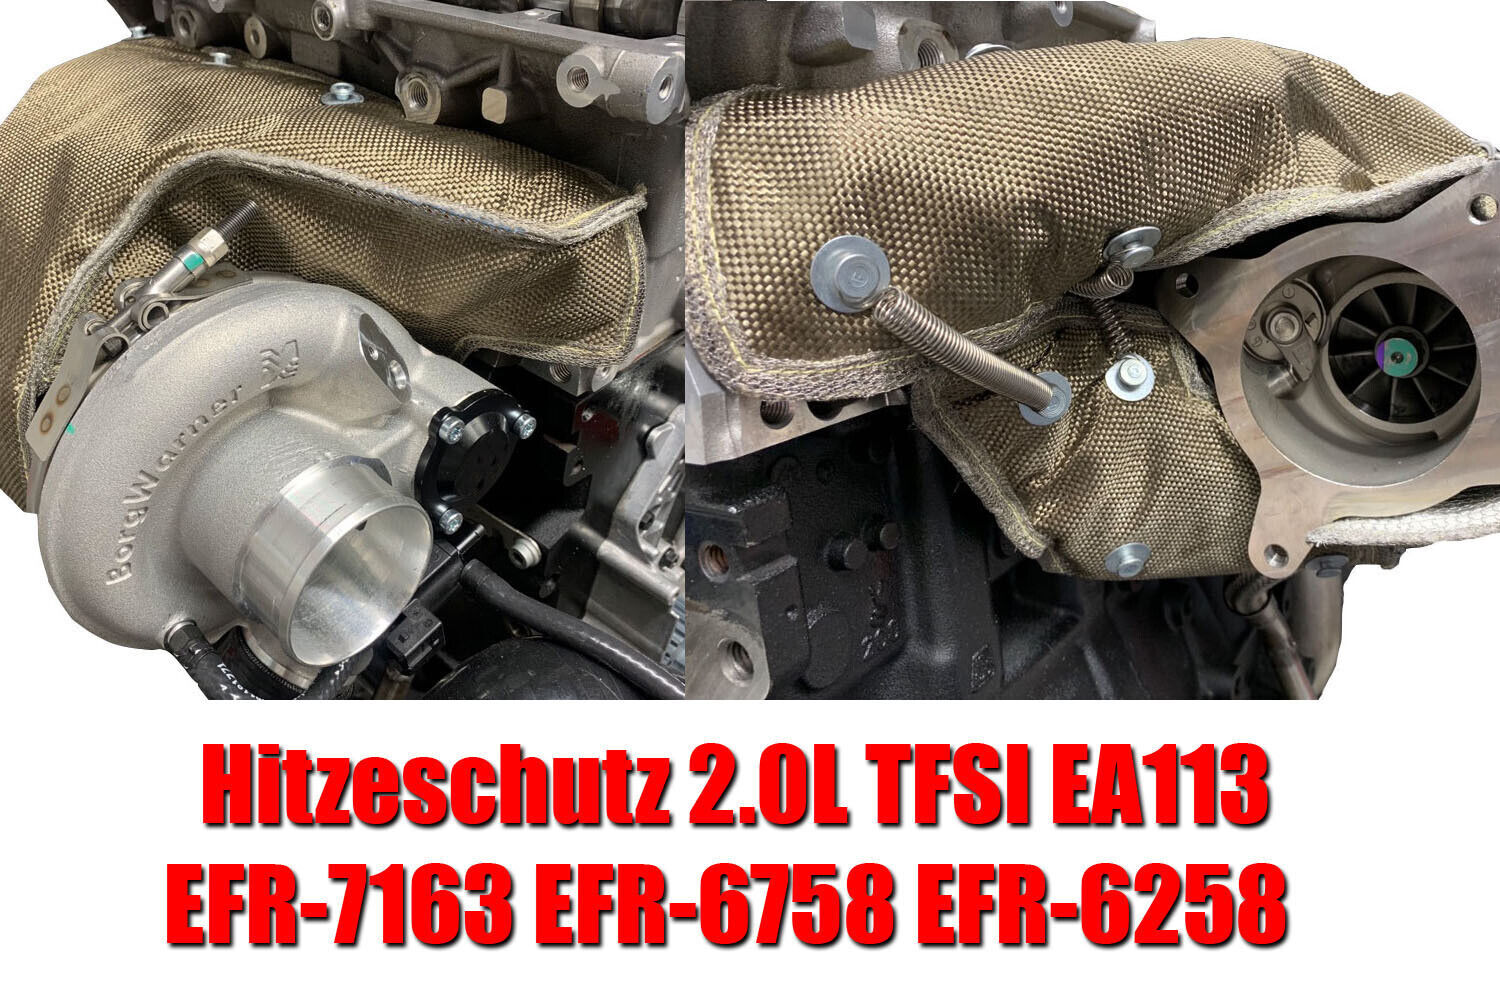 Hitzeschutz Titan TFSI für EFR-7163 EFR-6758 EFR-6258 mit Integralkrümmer